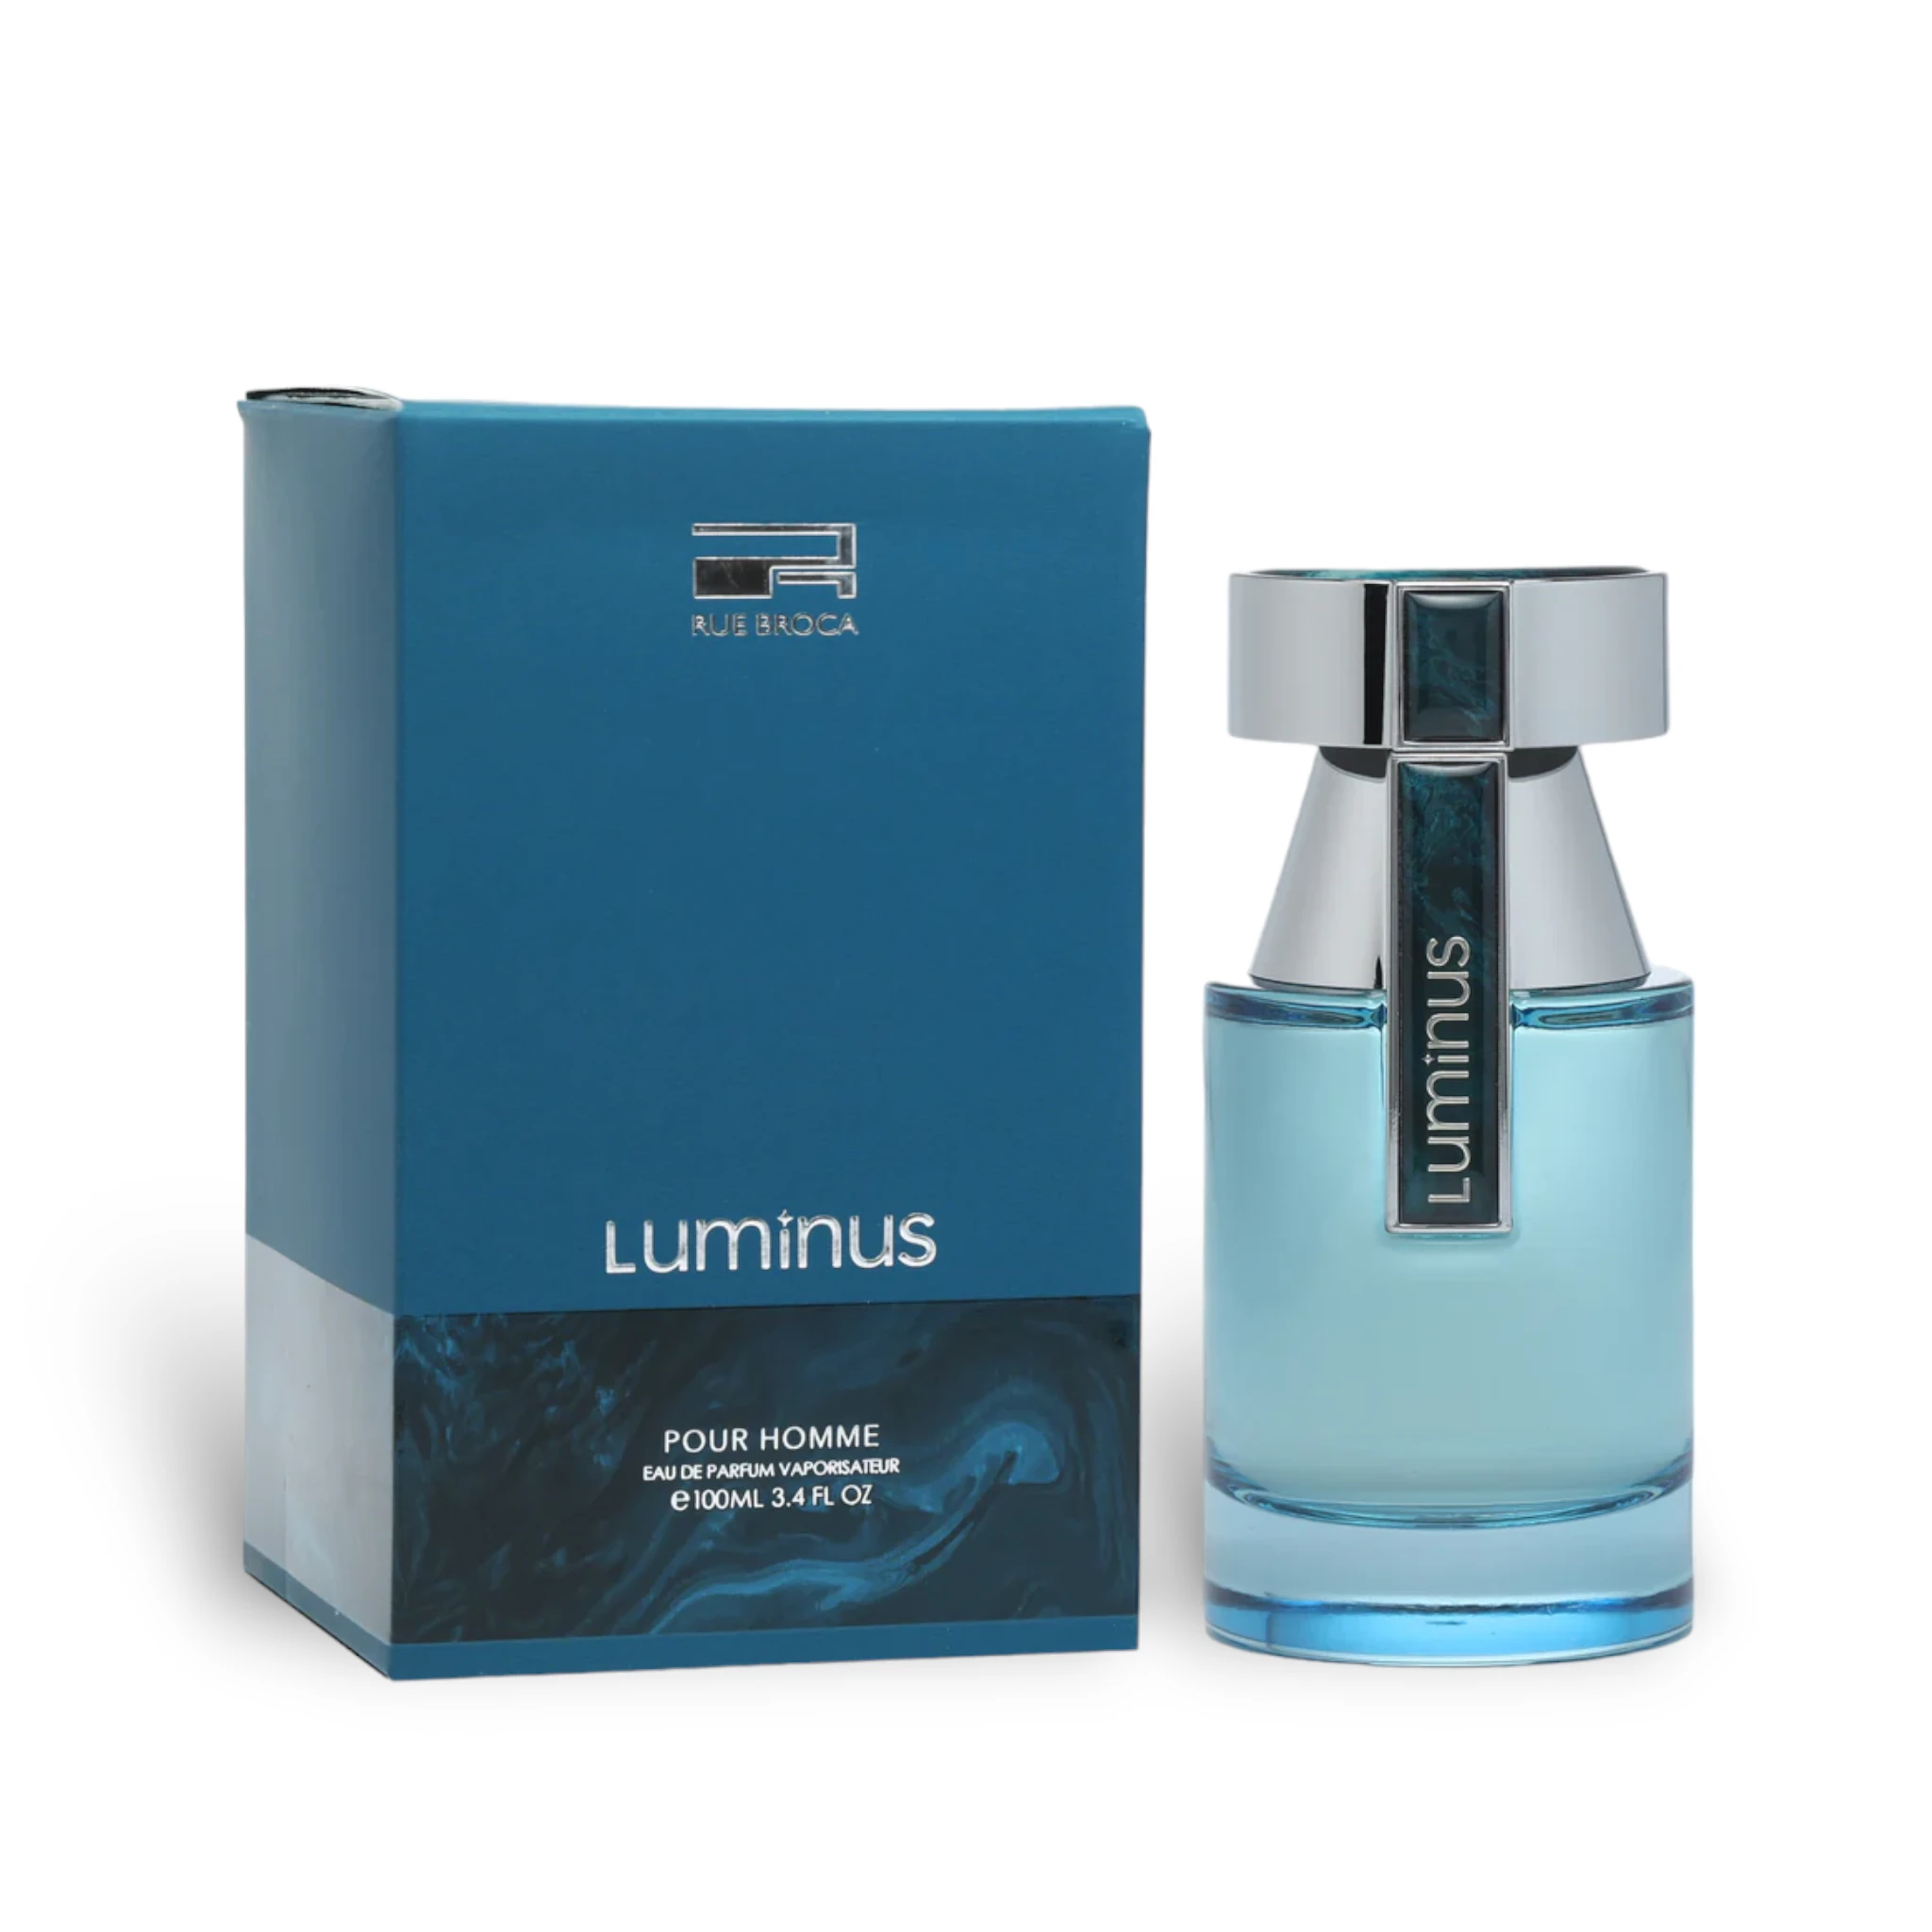 Luminous Pour Homme Perfume Eau De Parfum 100Ml By Rue Broca (Afnan)